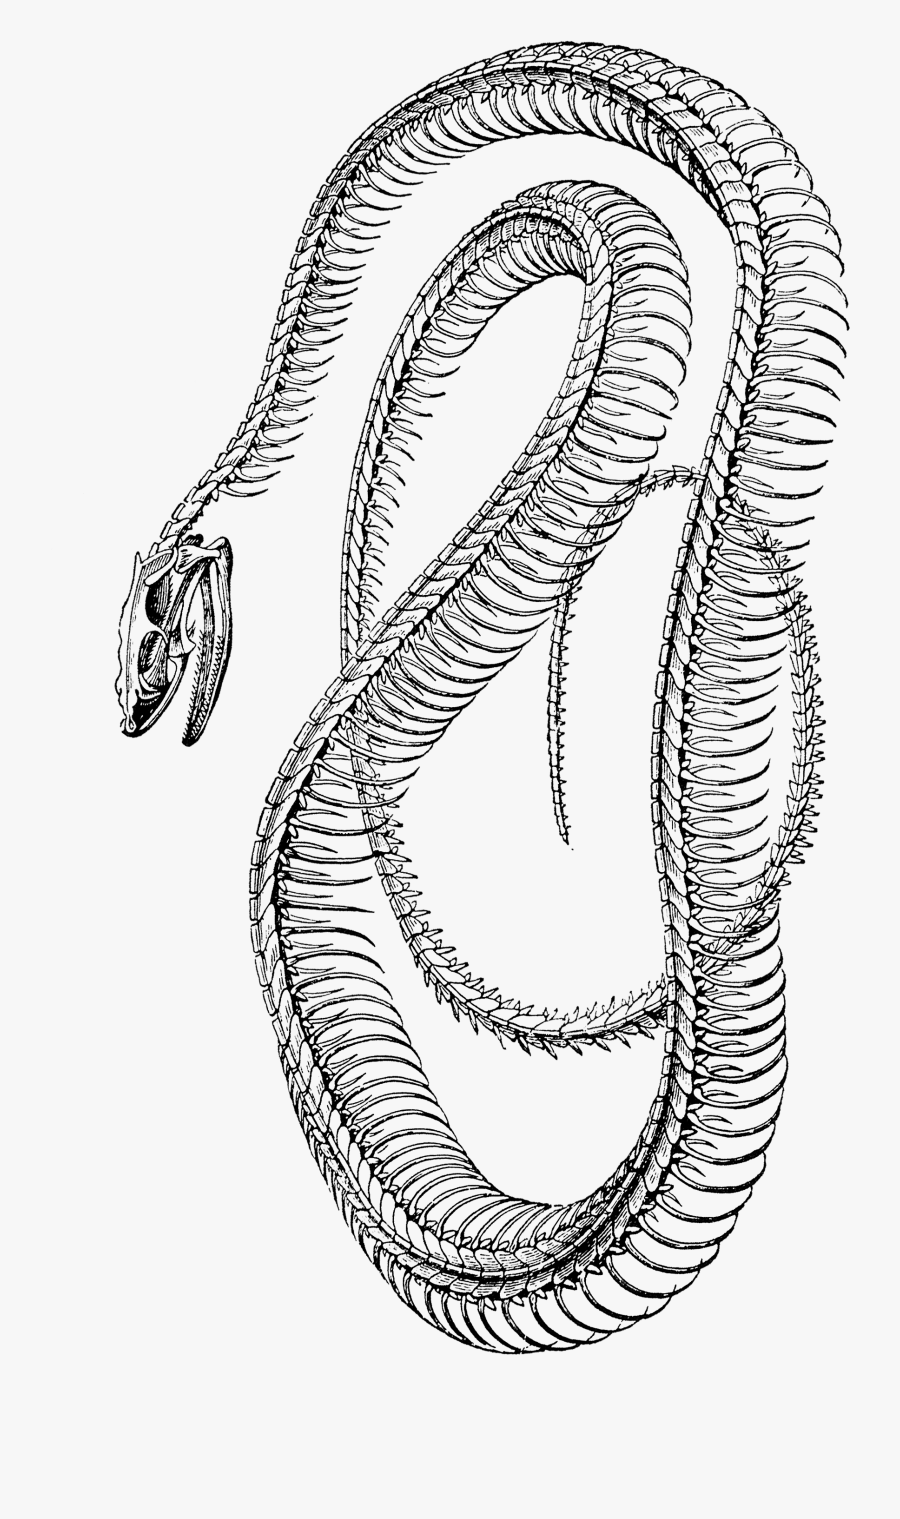 Free Vintage Clip Art - Snake Skeleton Png, Transparent Clipart